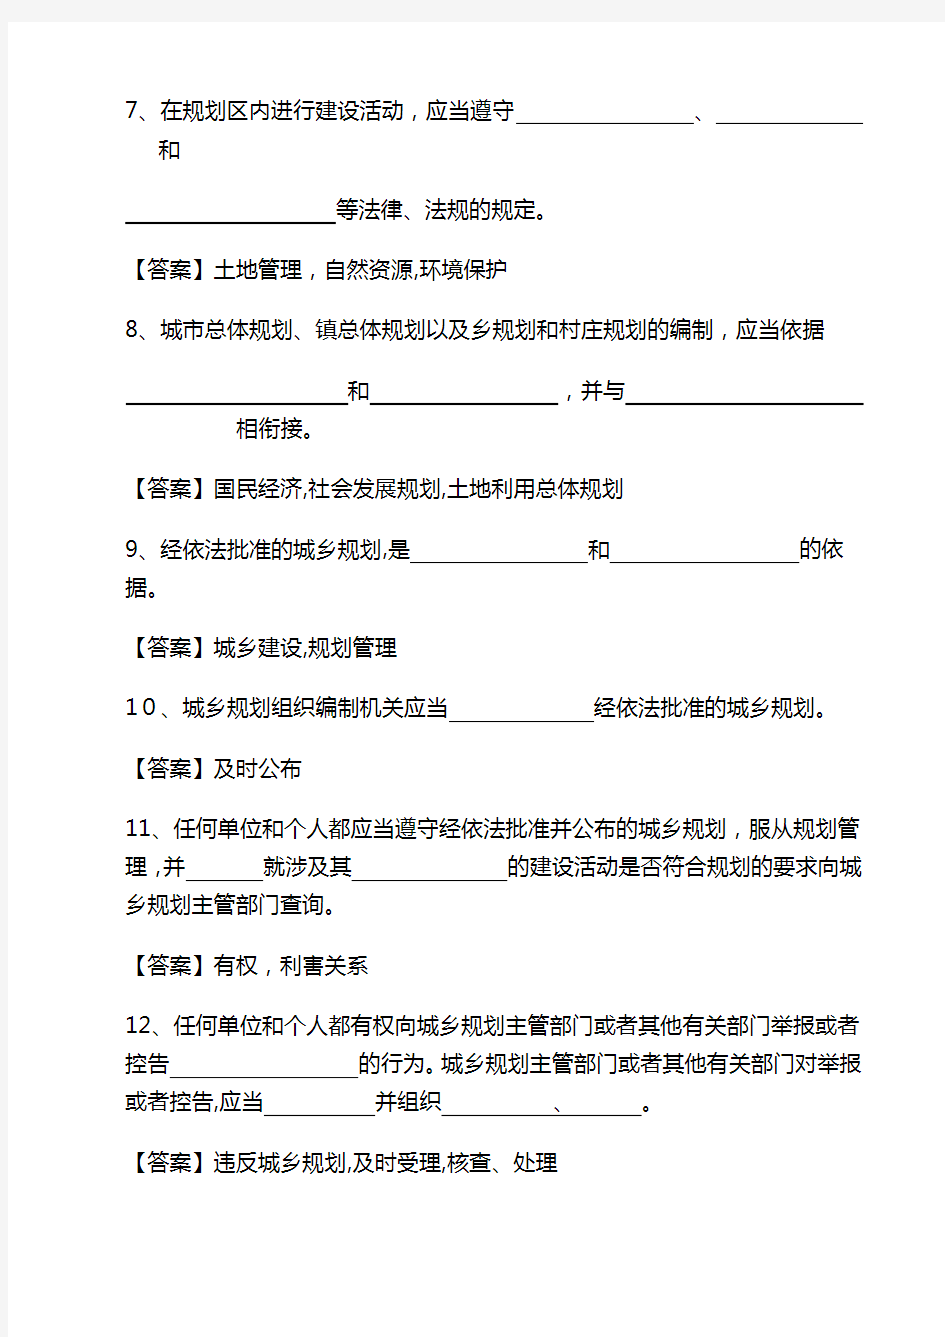 《中华人民共和国城乡规划法》试题及详细标准答案解析